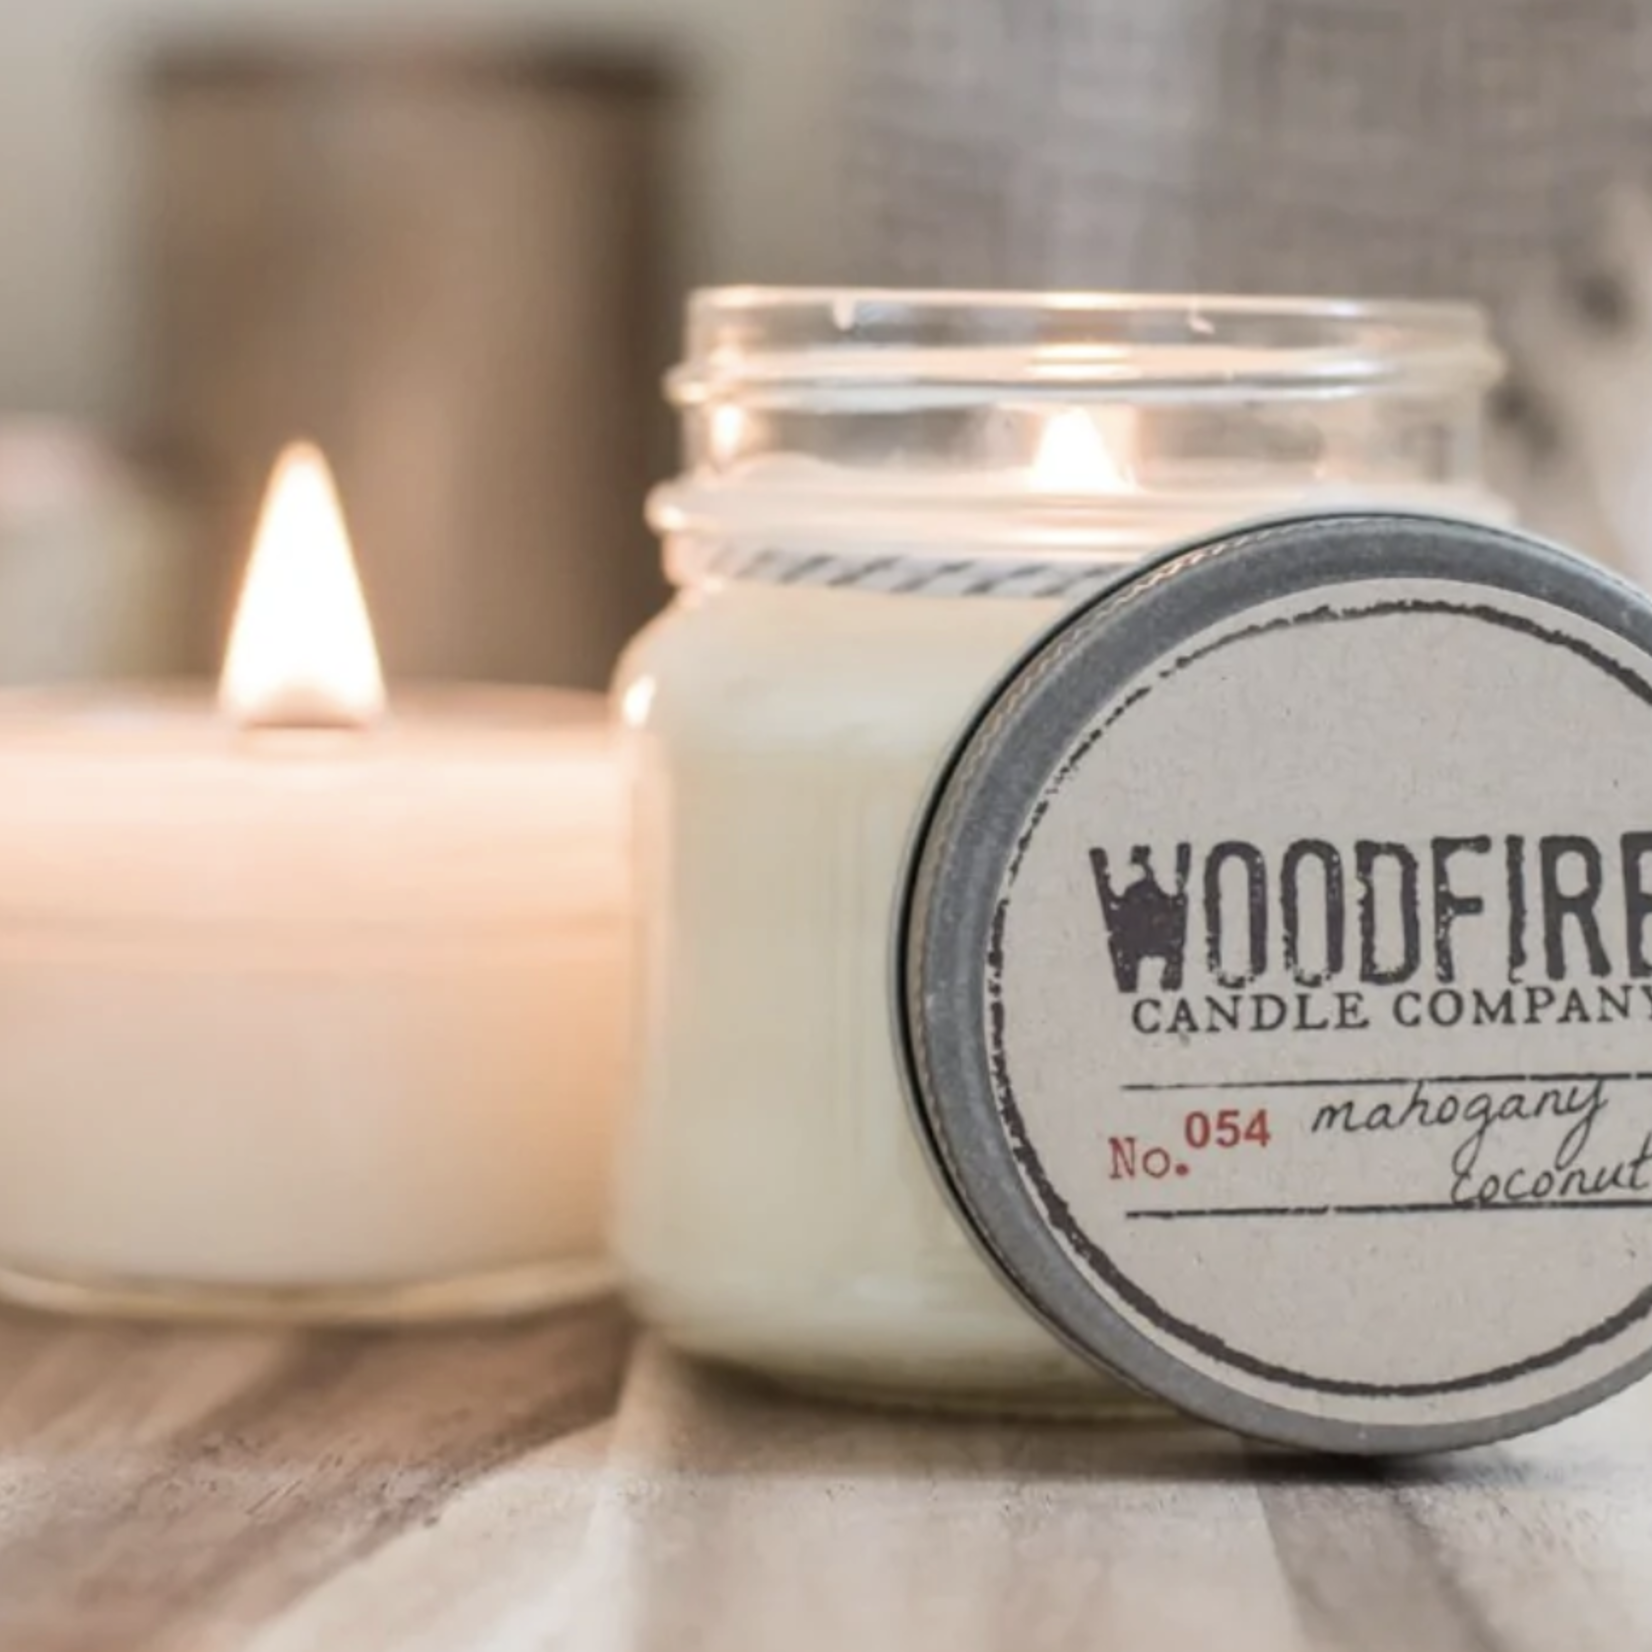 Woodfire Candle Co Woodfire Candle, Mason Jar